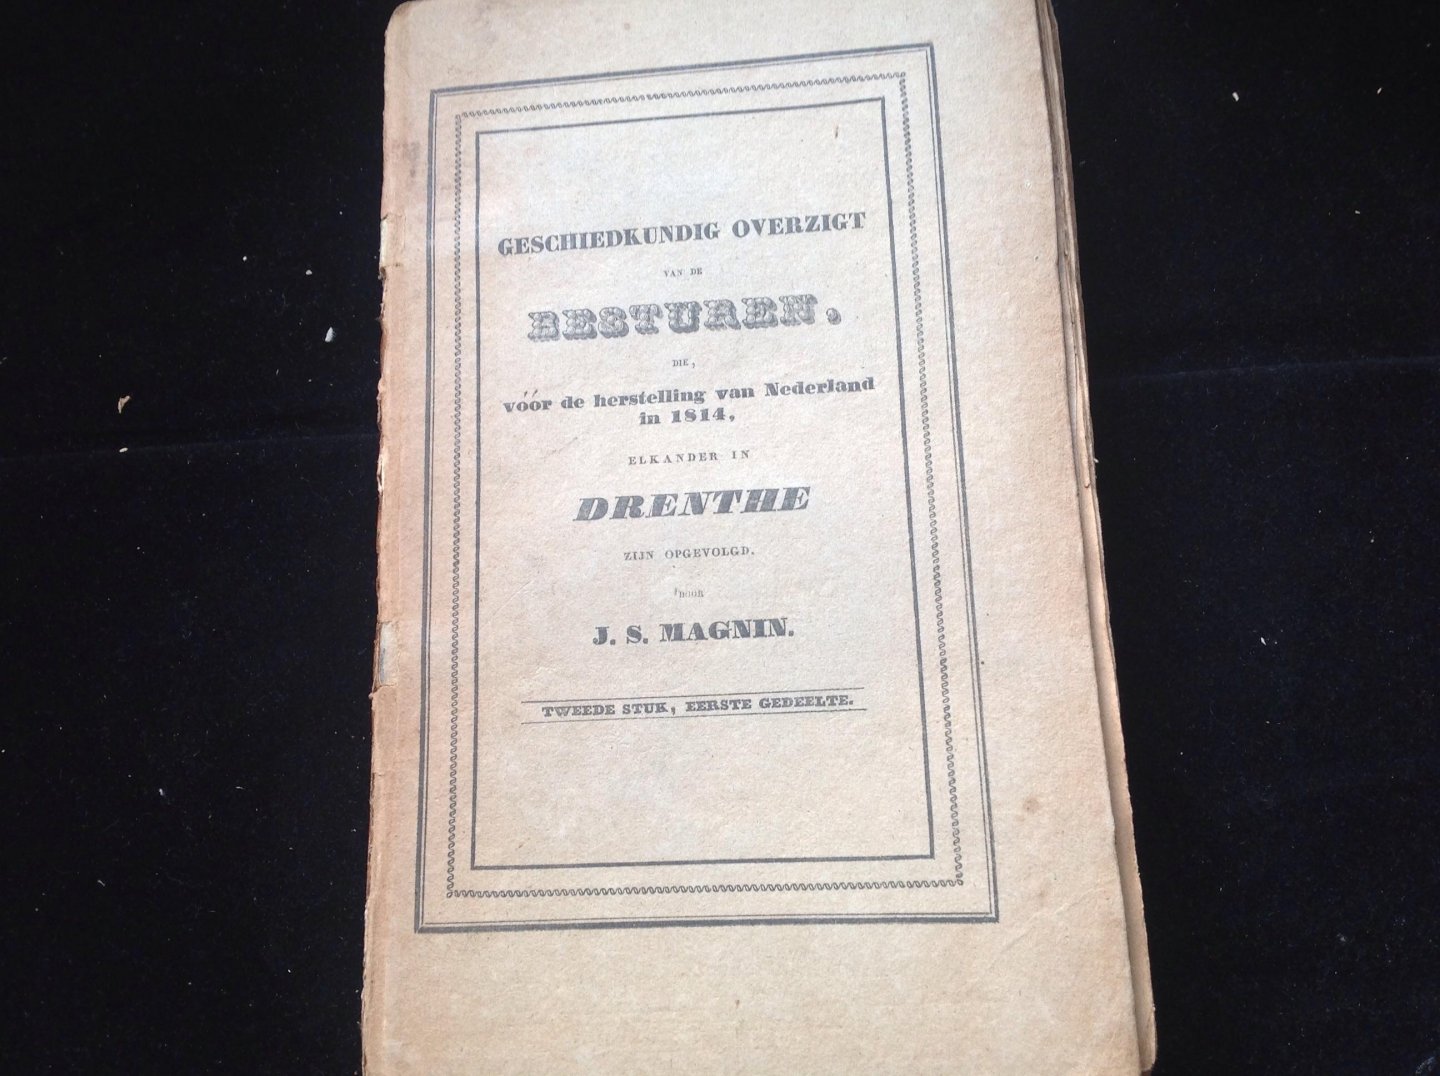 Magin, J.S. - Geschiedkundig overzigt  van Nederland in 1814, elkander in Drenthe tweede  stuk, eerste gedeelte